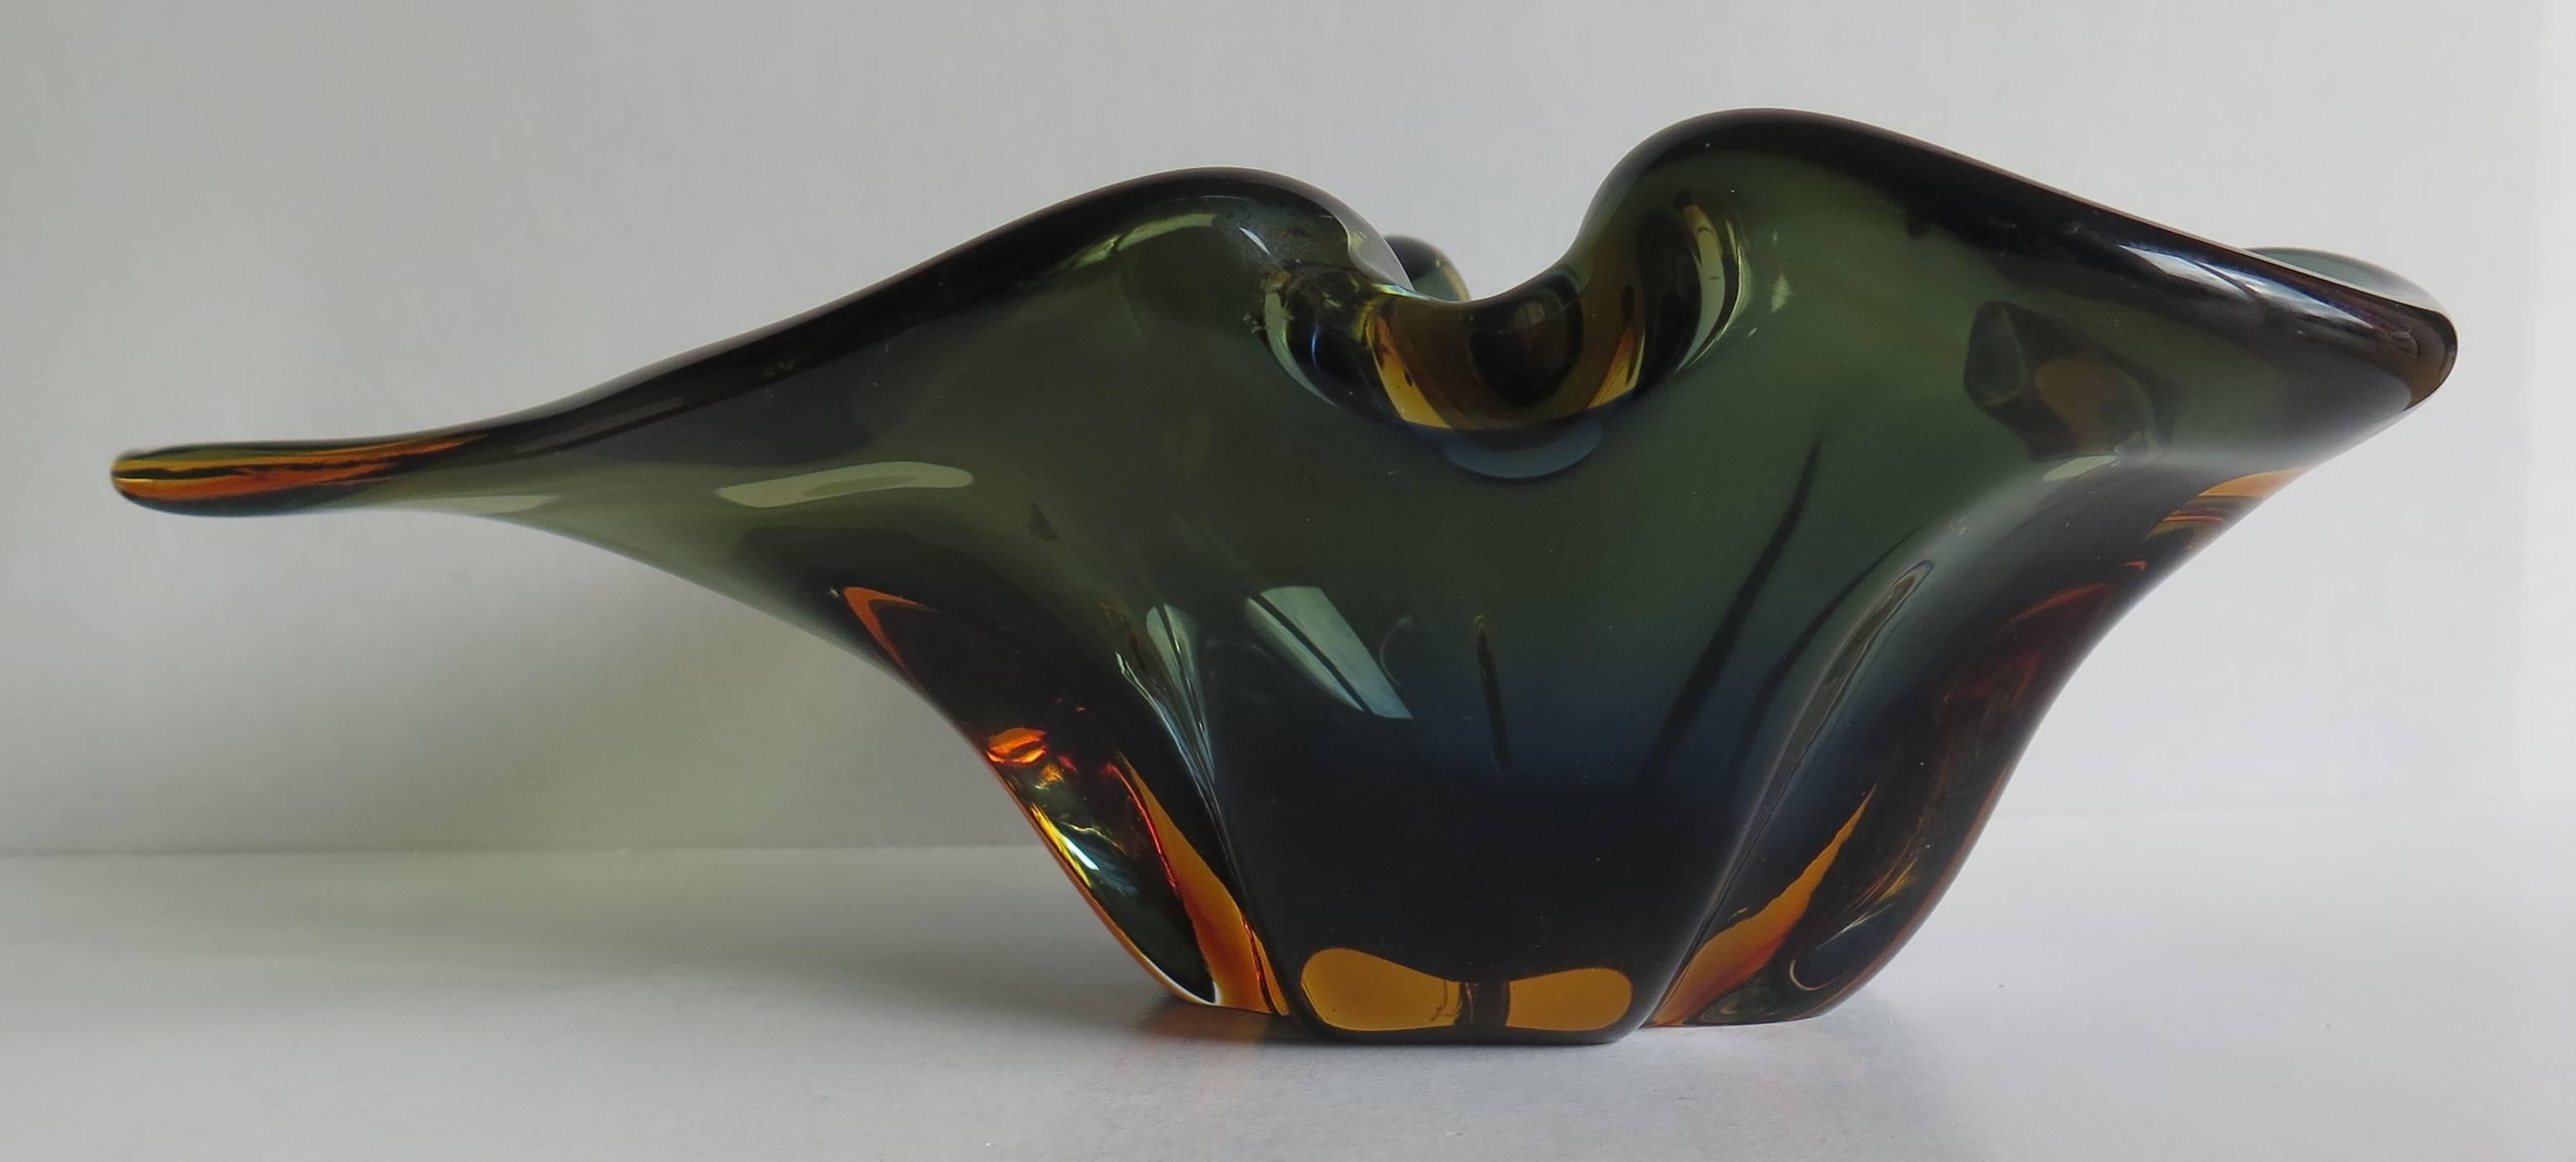 Hand-Crafted Murano Glass Bowl Attributed to Flavio Poli for Seguso Vetri d'Arte, Circa 1950